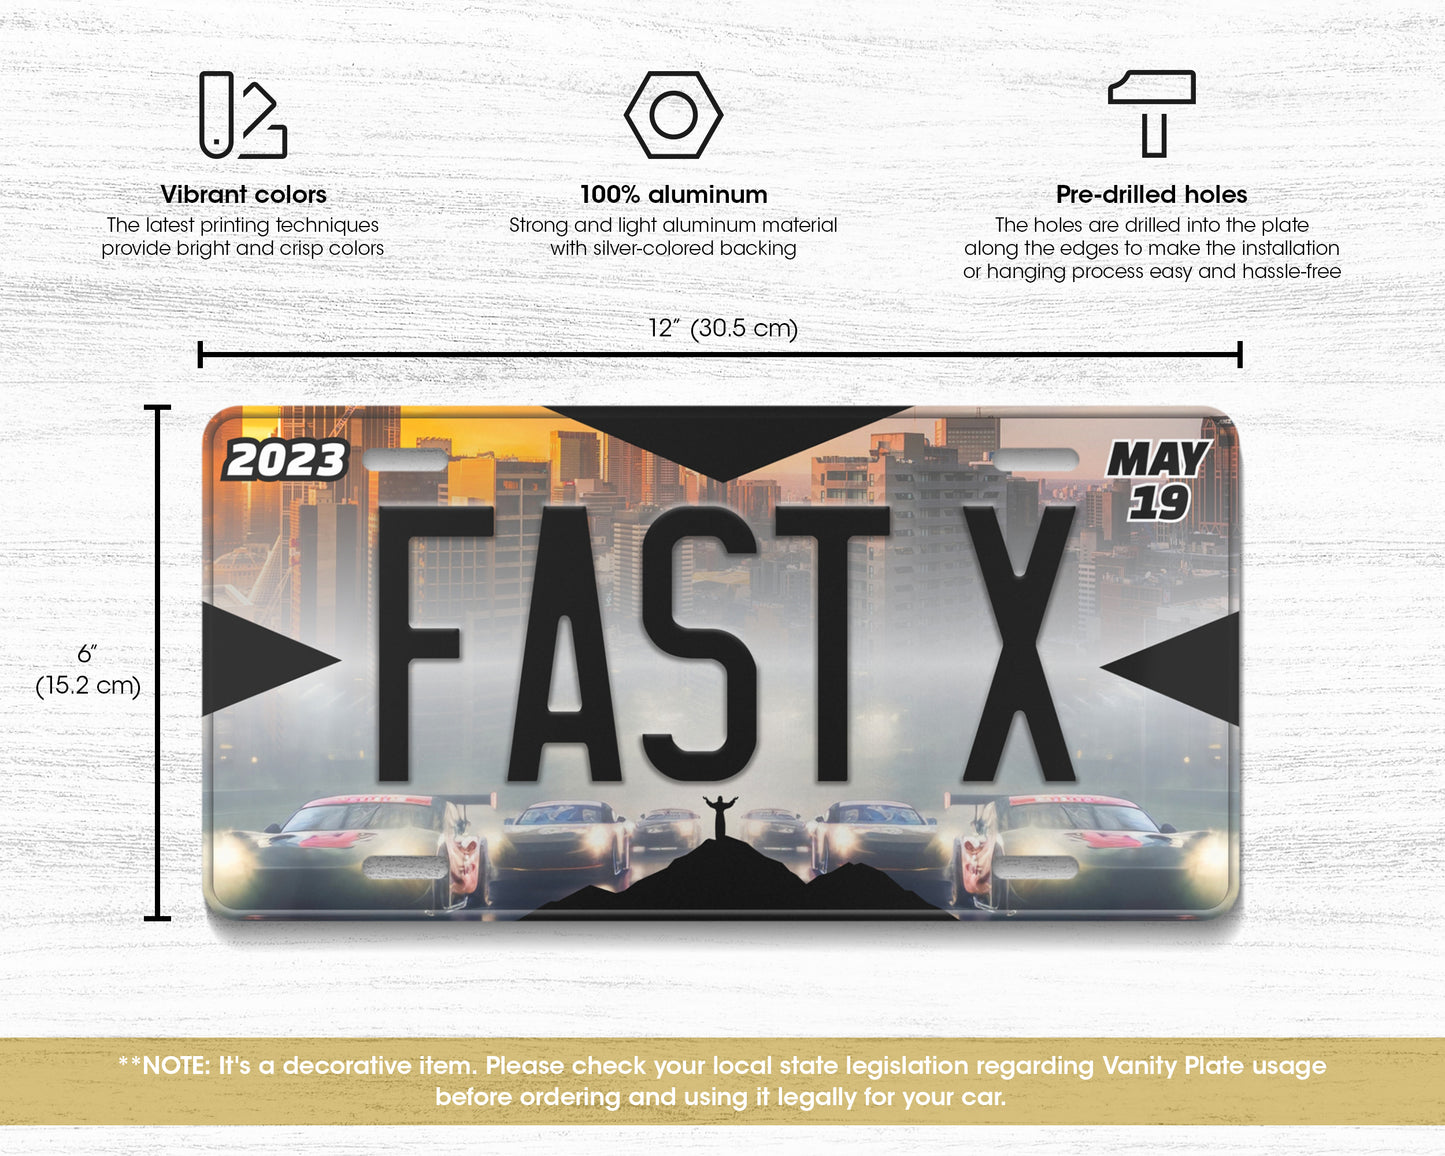 FastX (2023) movie license plate